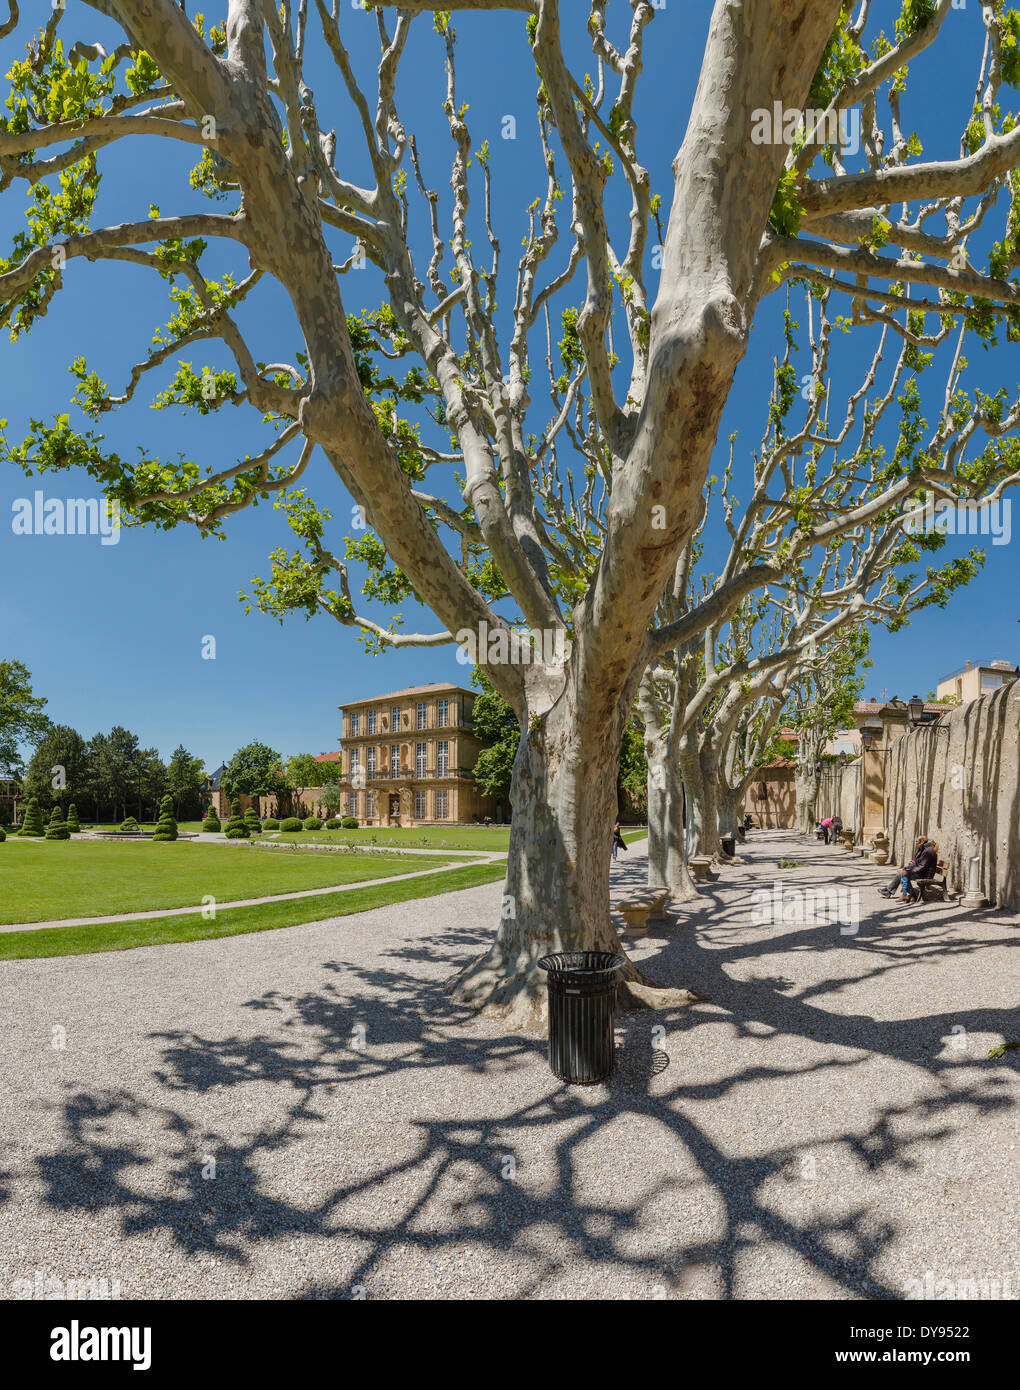 Parc Vendome, castle, forest, wood, trees, spring, people, garden, park, Aix en Provence, Bouches du Rhone, France, Europe, Stock Photo